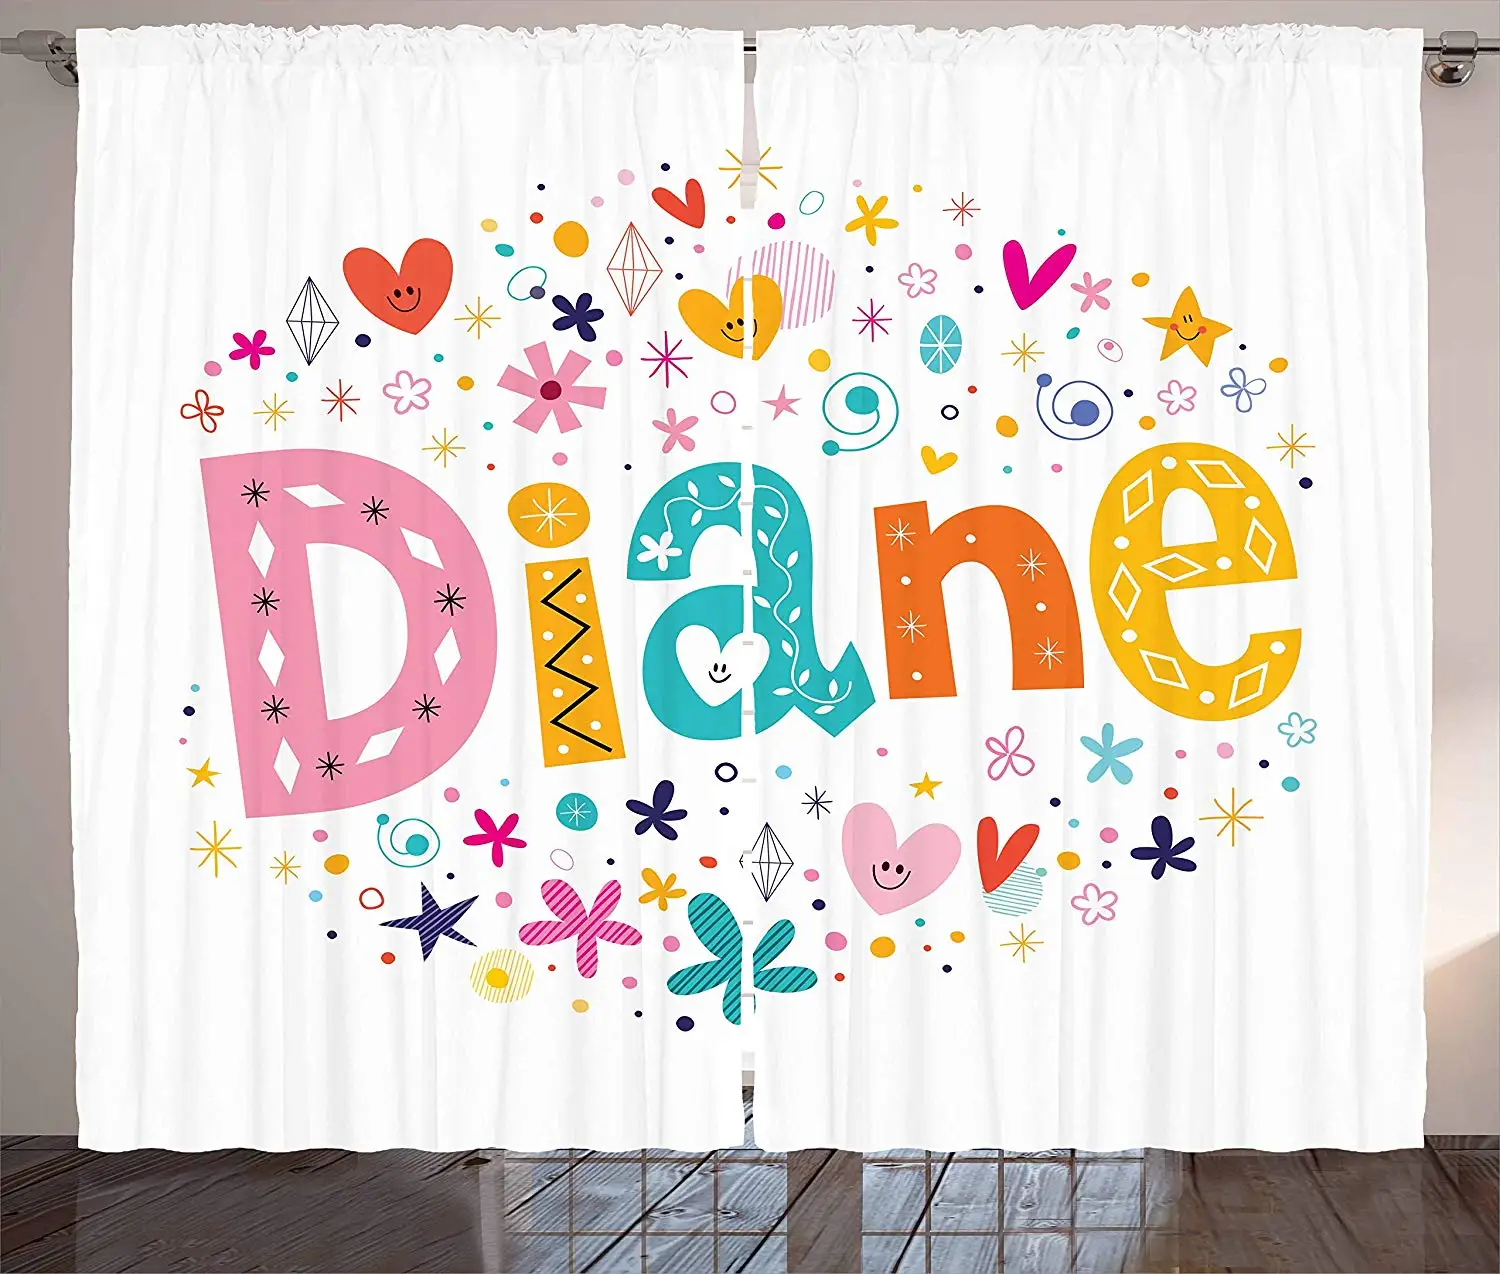 Diane шторы праздничное расположение букв имя маленькой девочки с геометрическими фигурами круги ромбы окна гостиной спальни